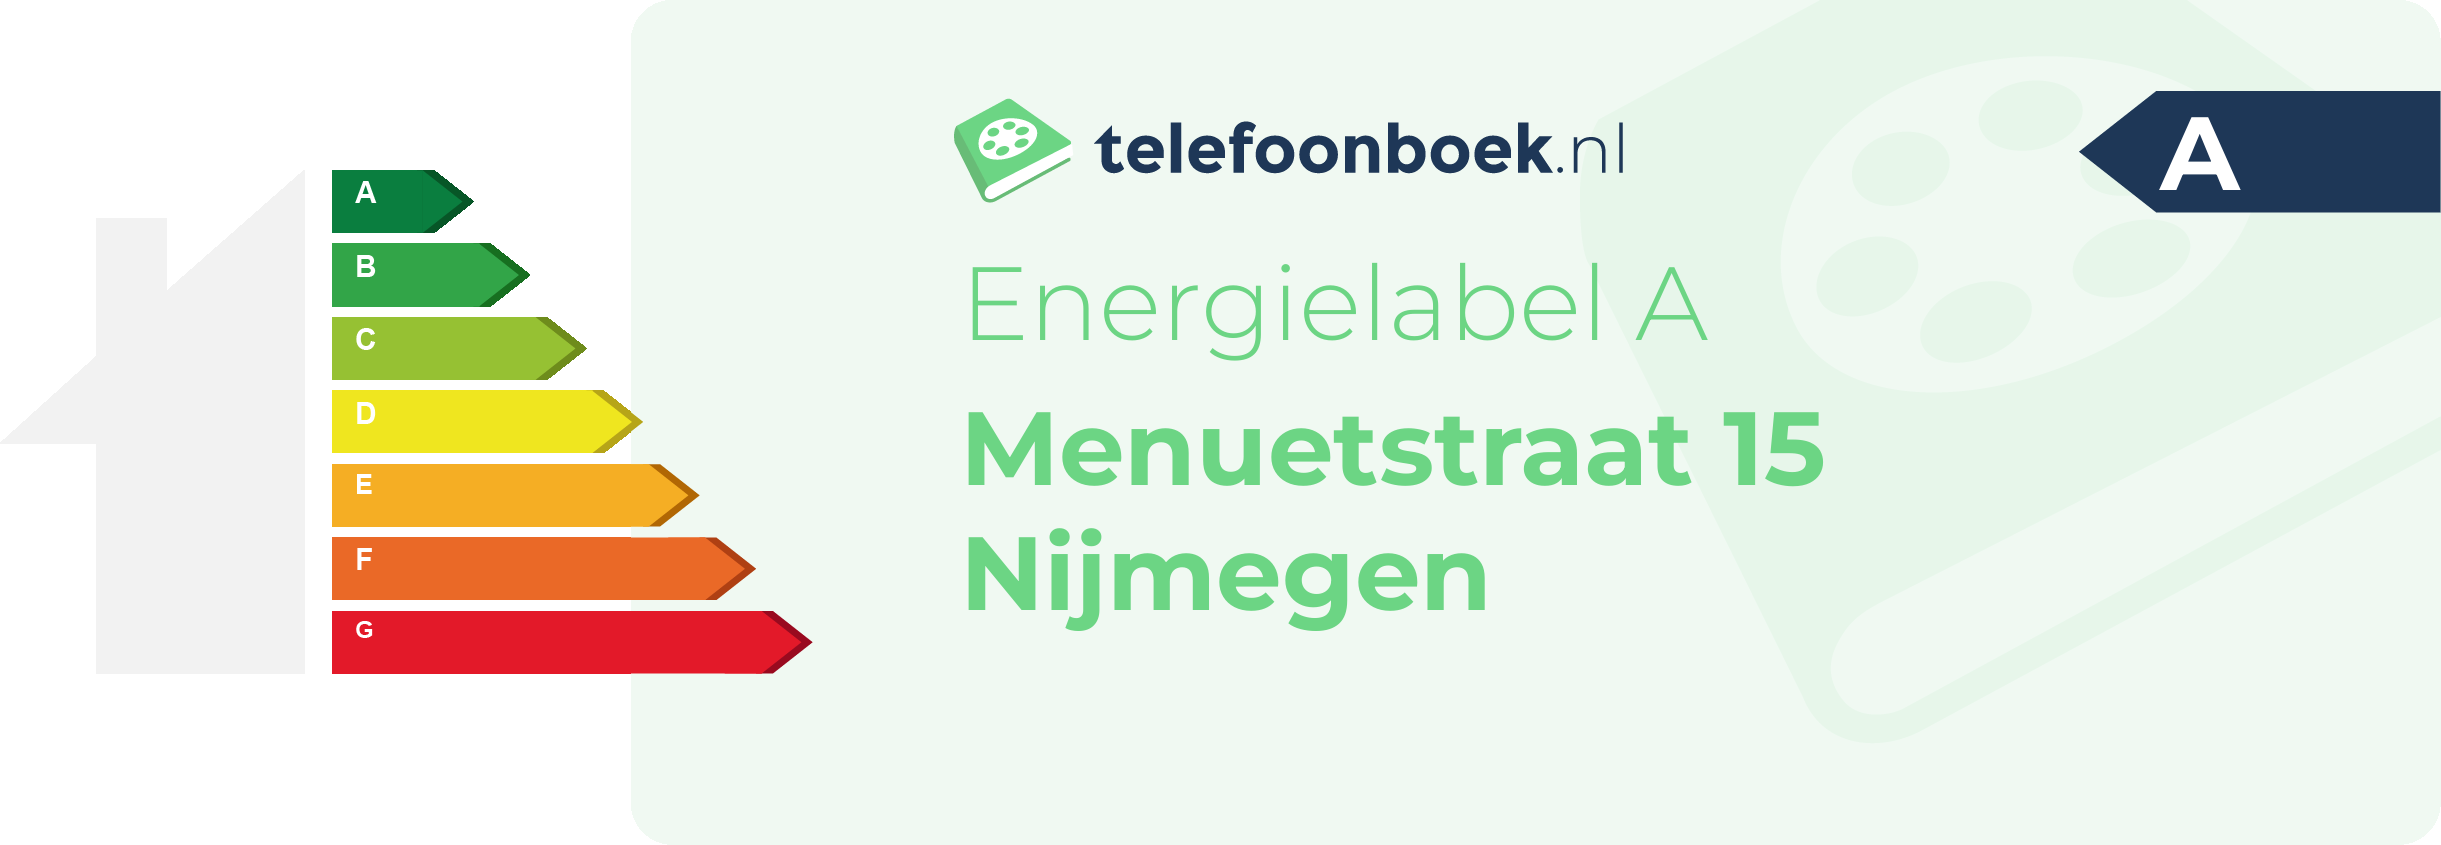 Energielabel Menuetstraat 15 Nijmegen